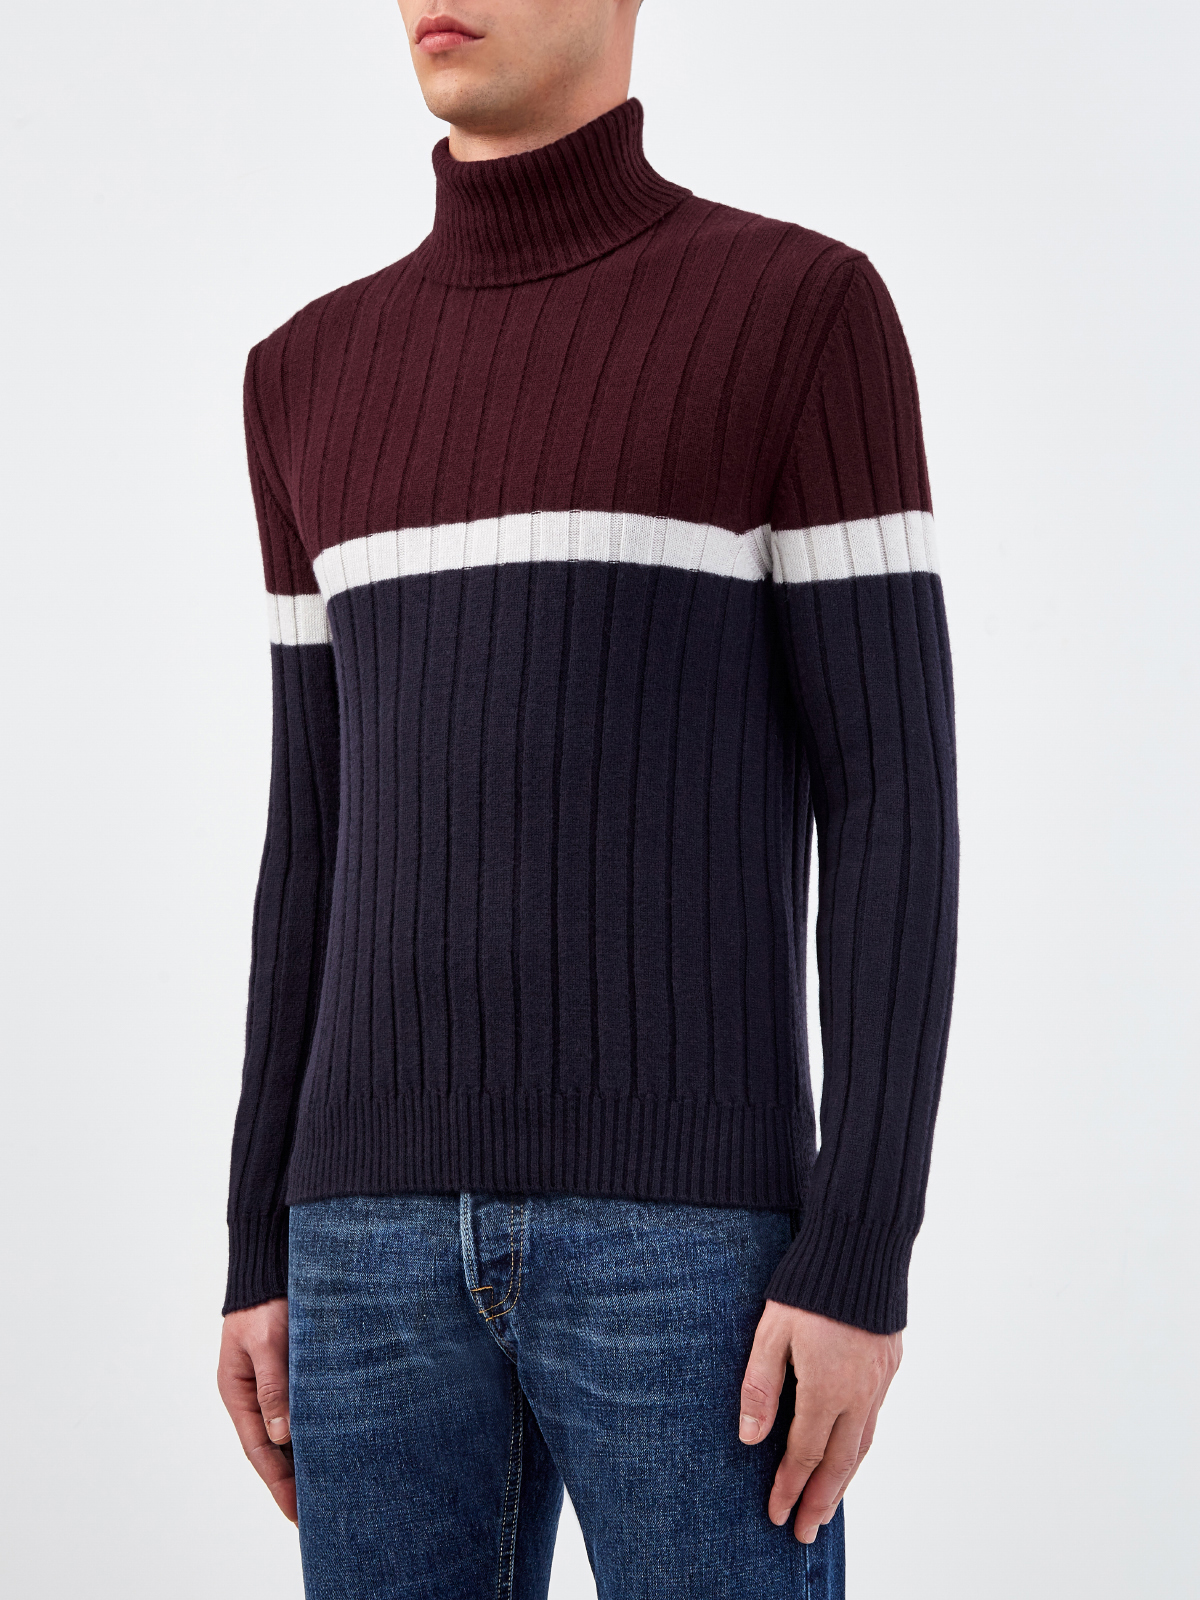 Шерстяной свитер с отделкой в стиле colorblock ELEVENTY, цвет мульти, размер 46;48;50 - фото 3